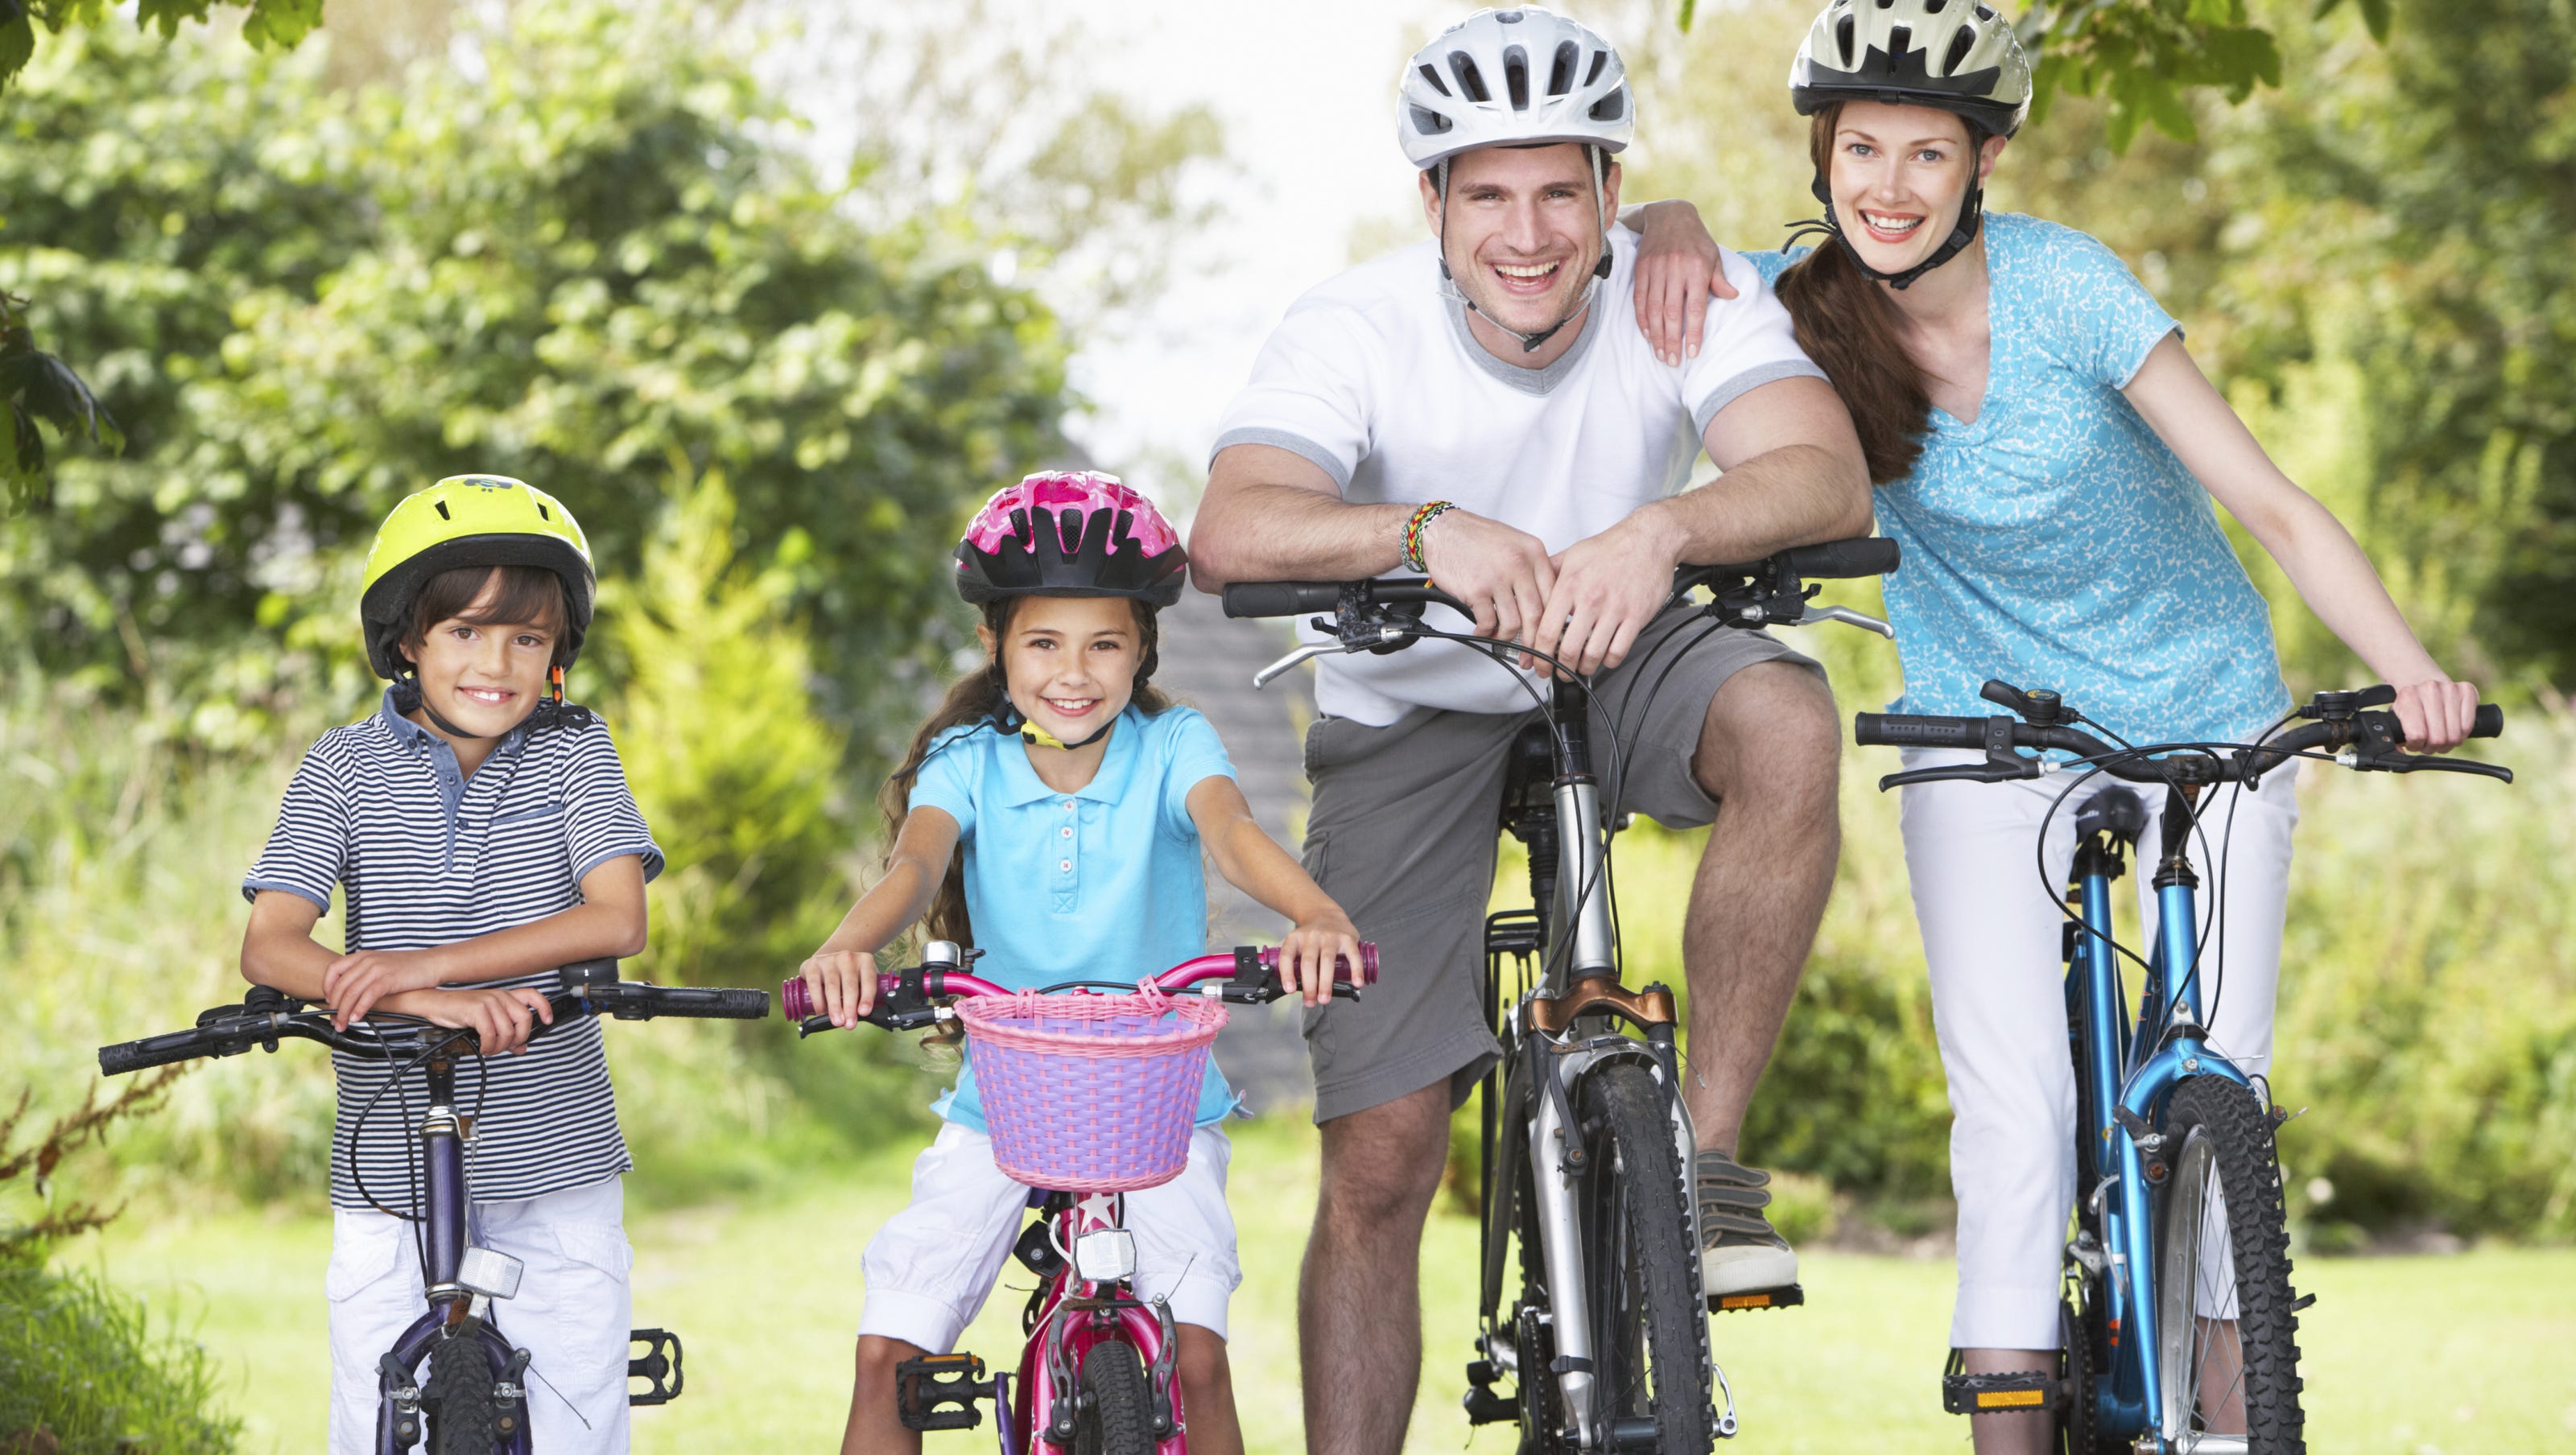 Велосемья. Семья на велосипедах. Велосипеды для всей семьи. Прогулки на велосипеде всей семьей. Семья катается на велосипедах.